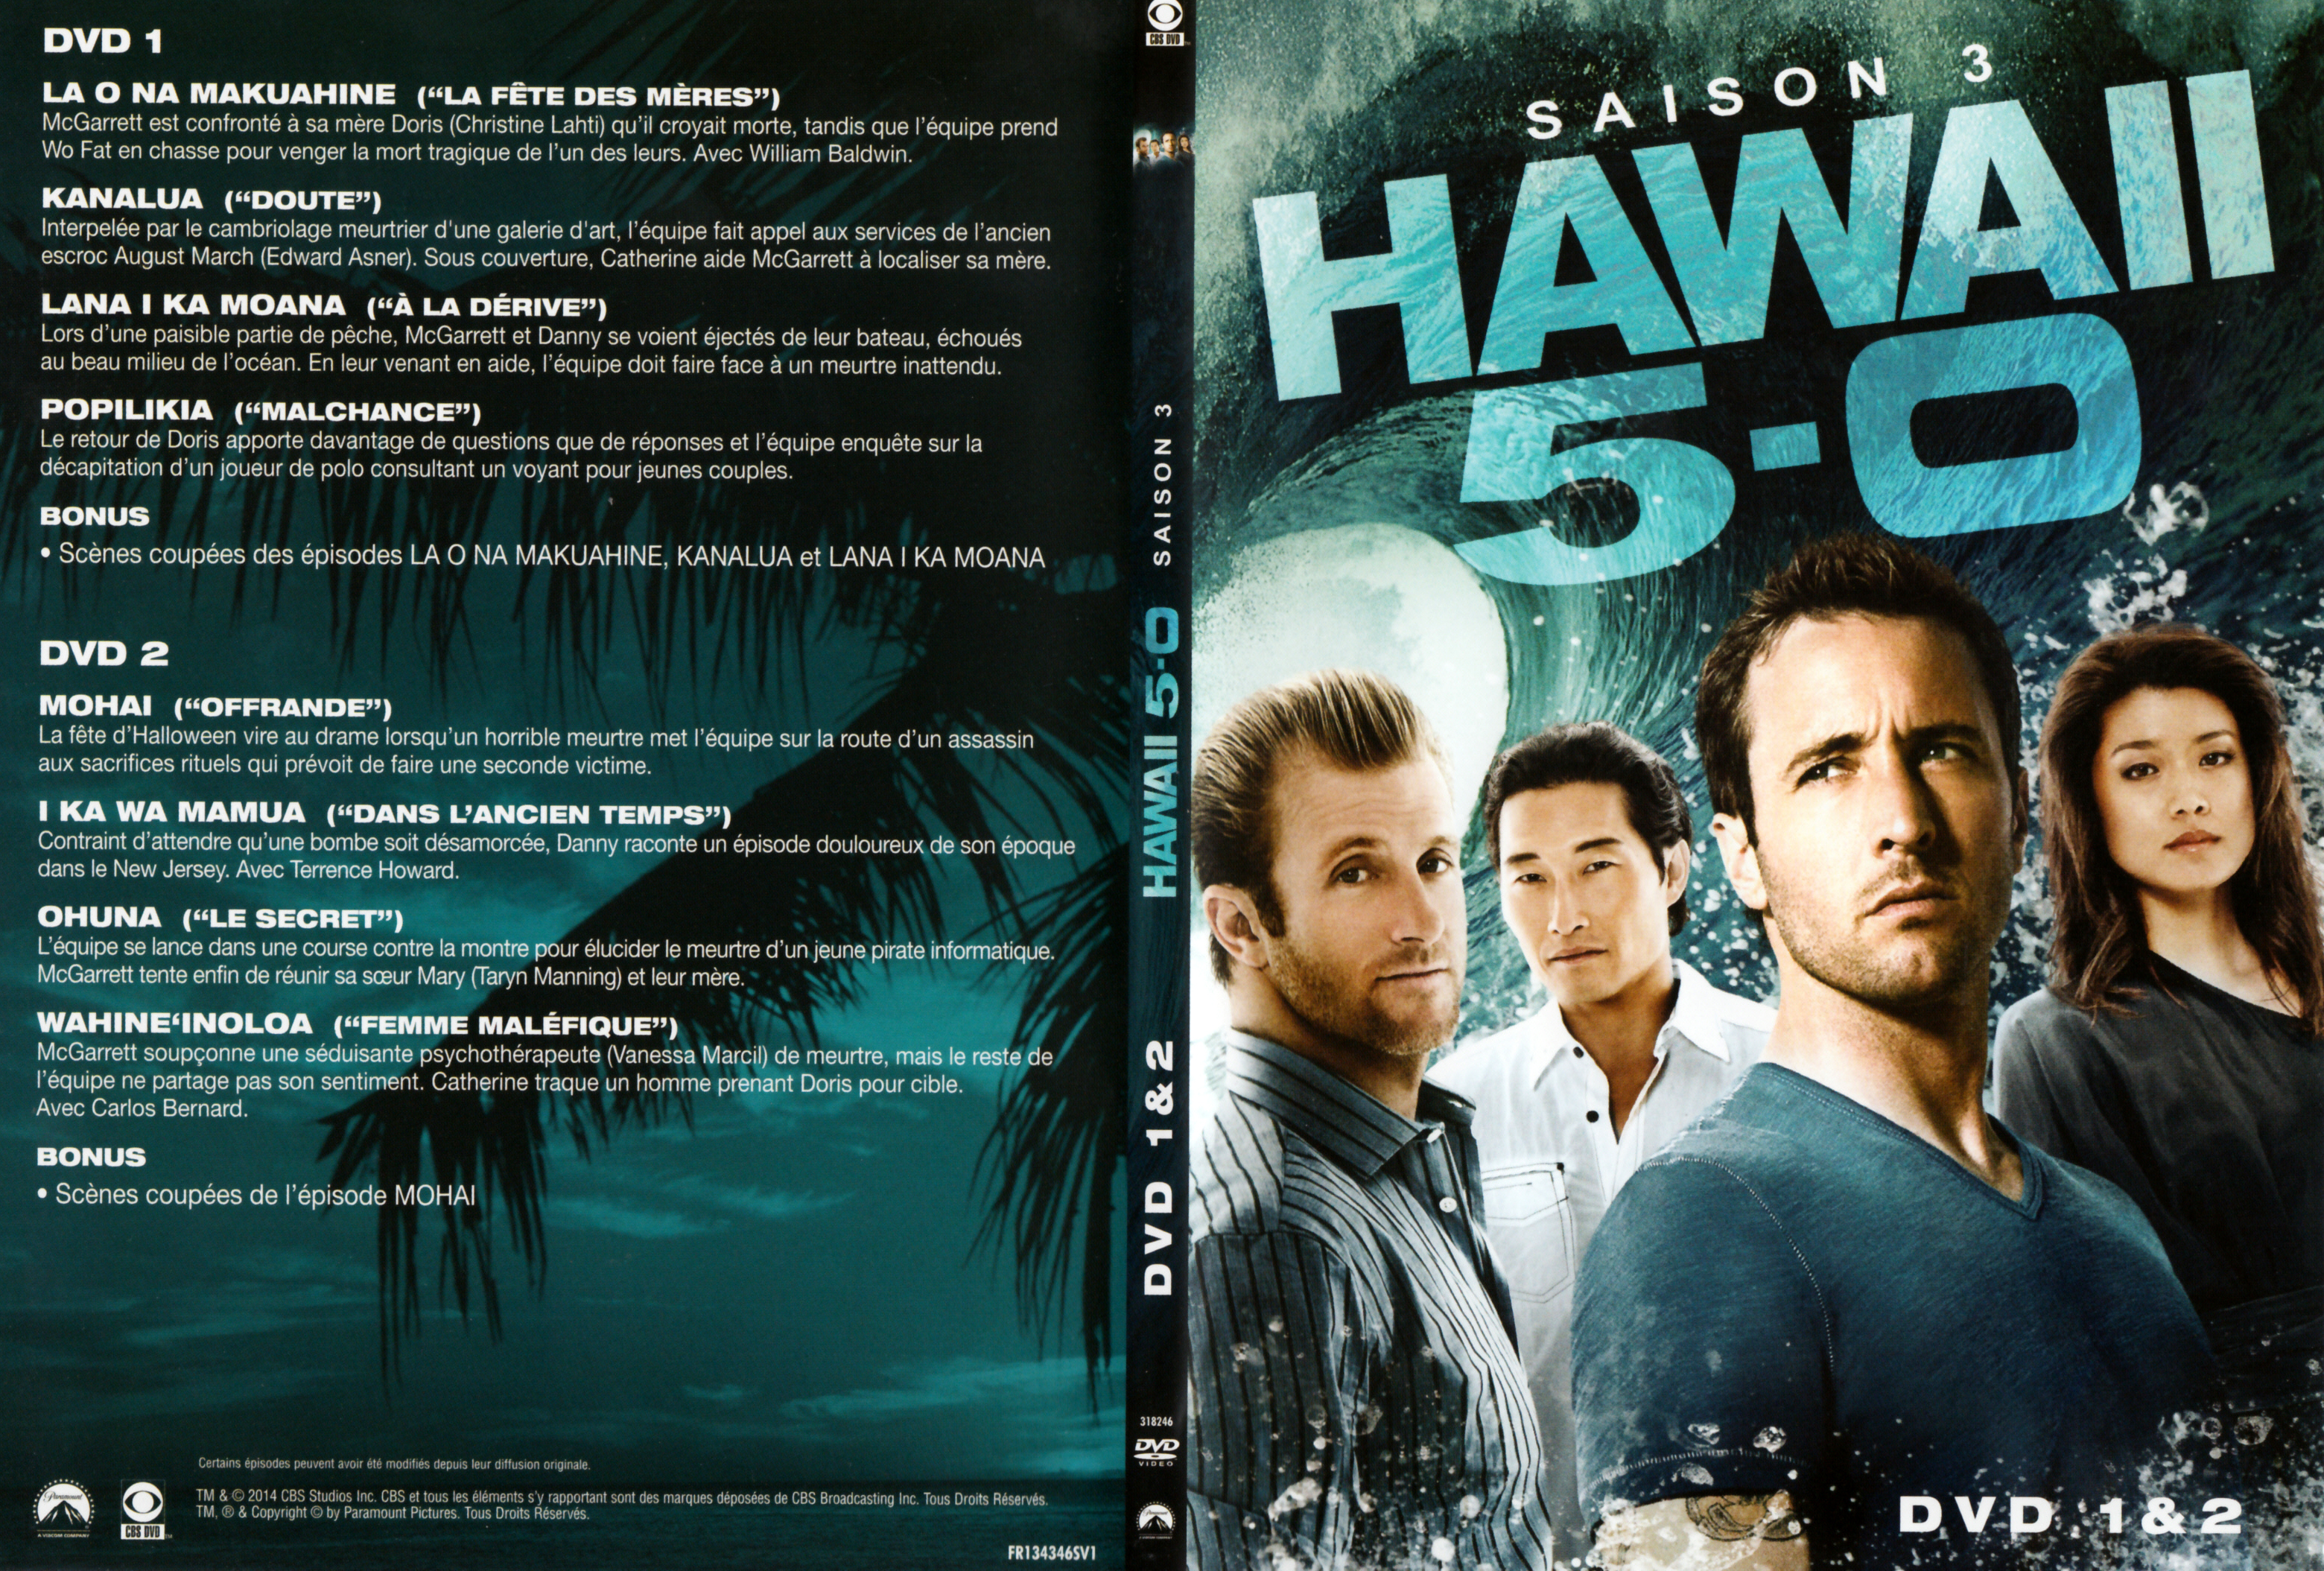 Jaquette DVD Hawaii Five-O Saison 3 DVD 1